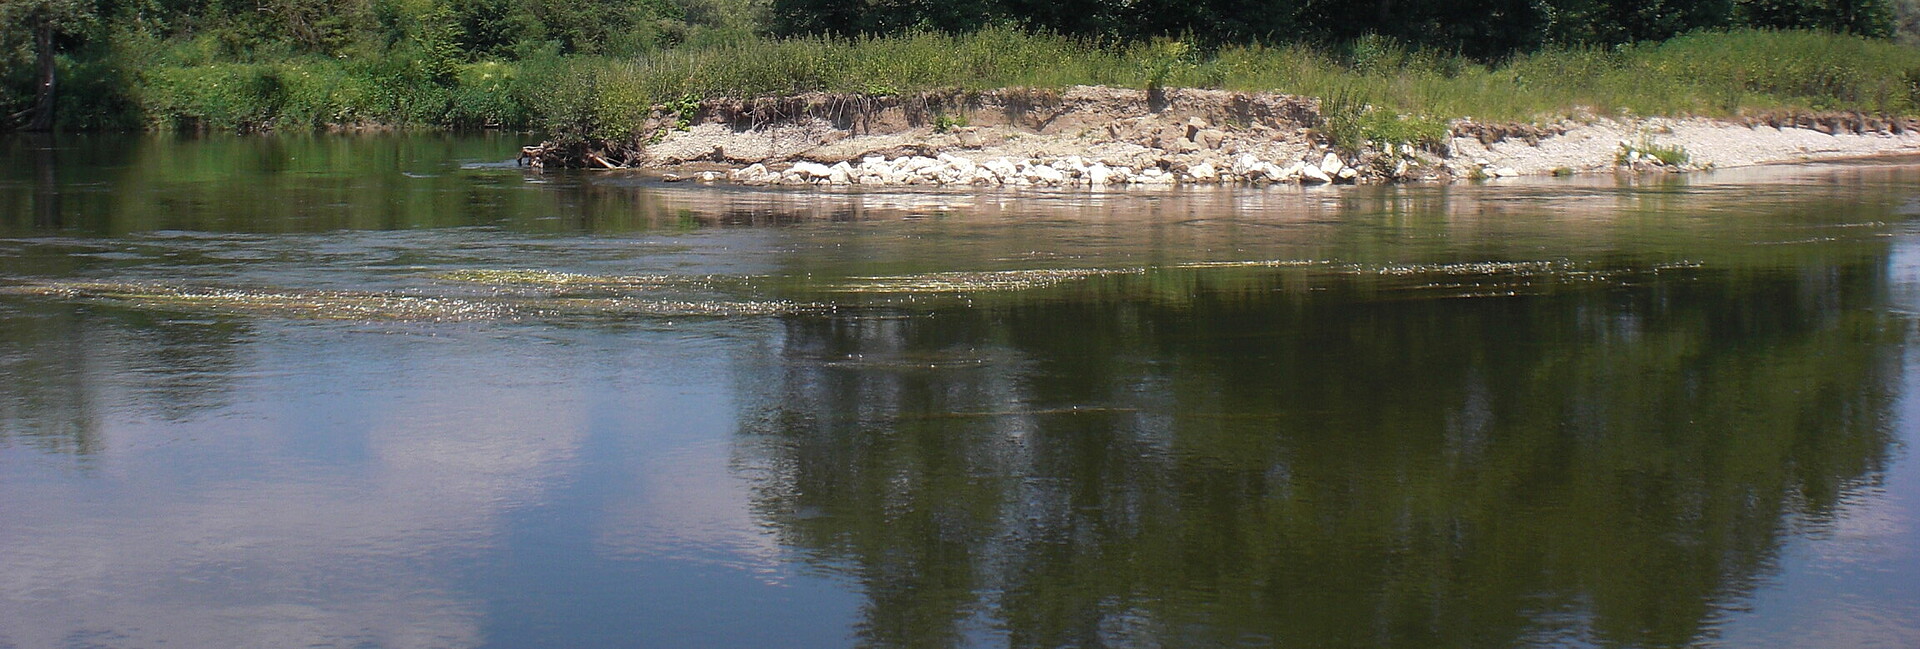 Blick auf ein Gewässer mit einem Uferabbruch